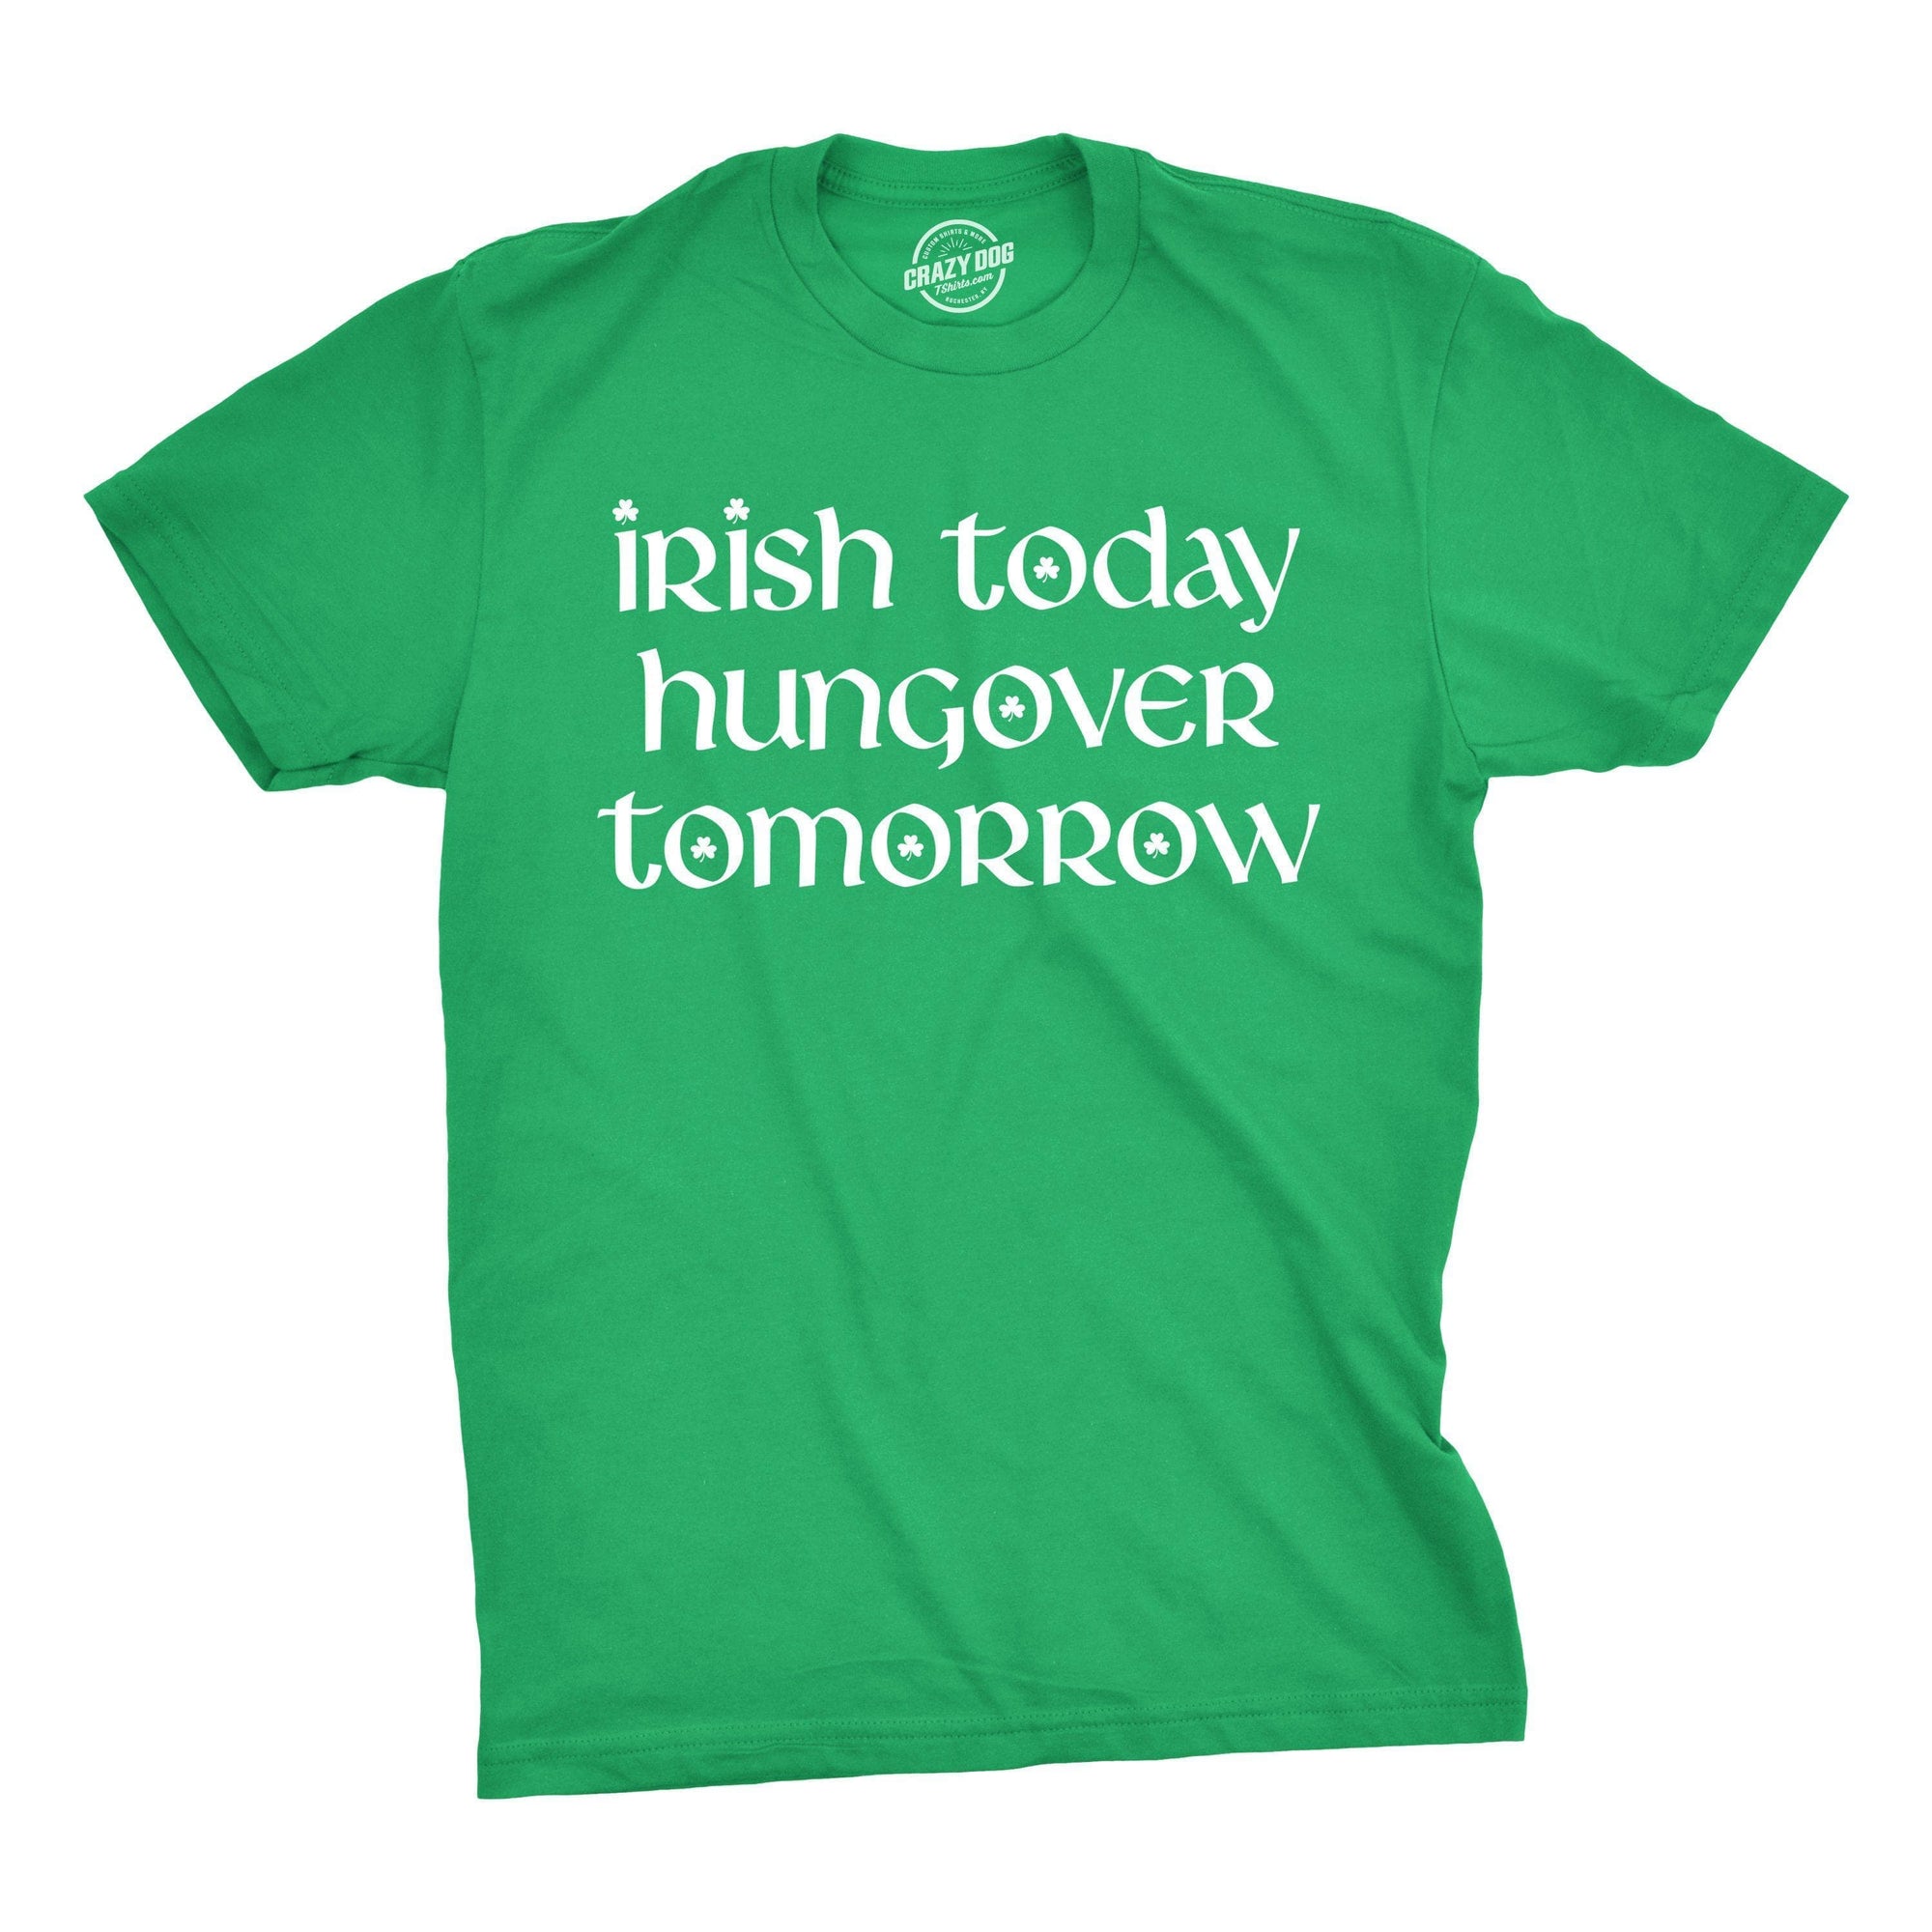 Irish Yoga Shirt   - TeeDragons